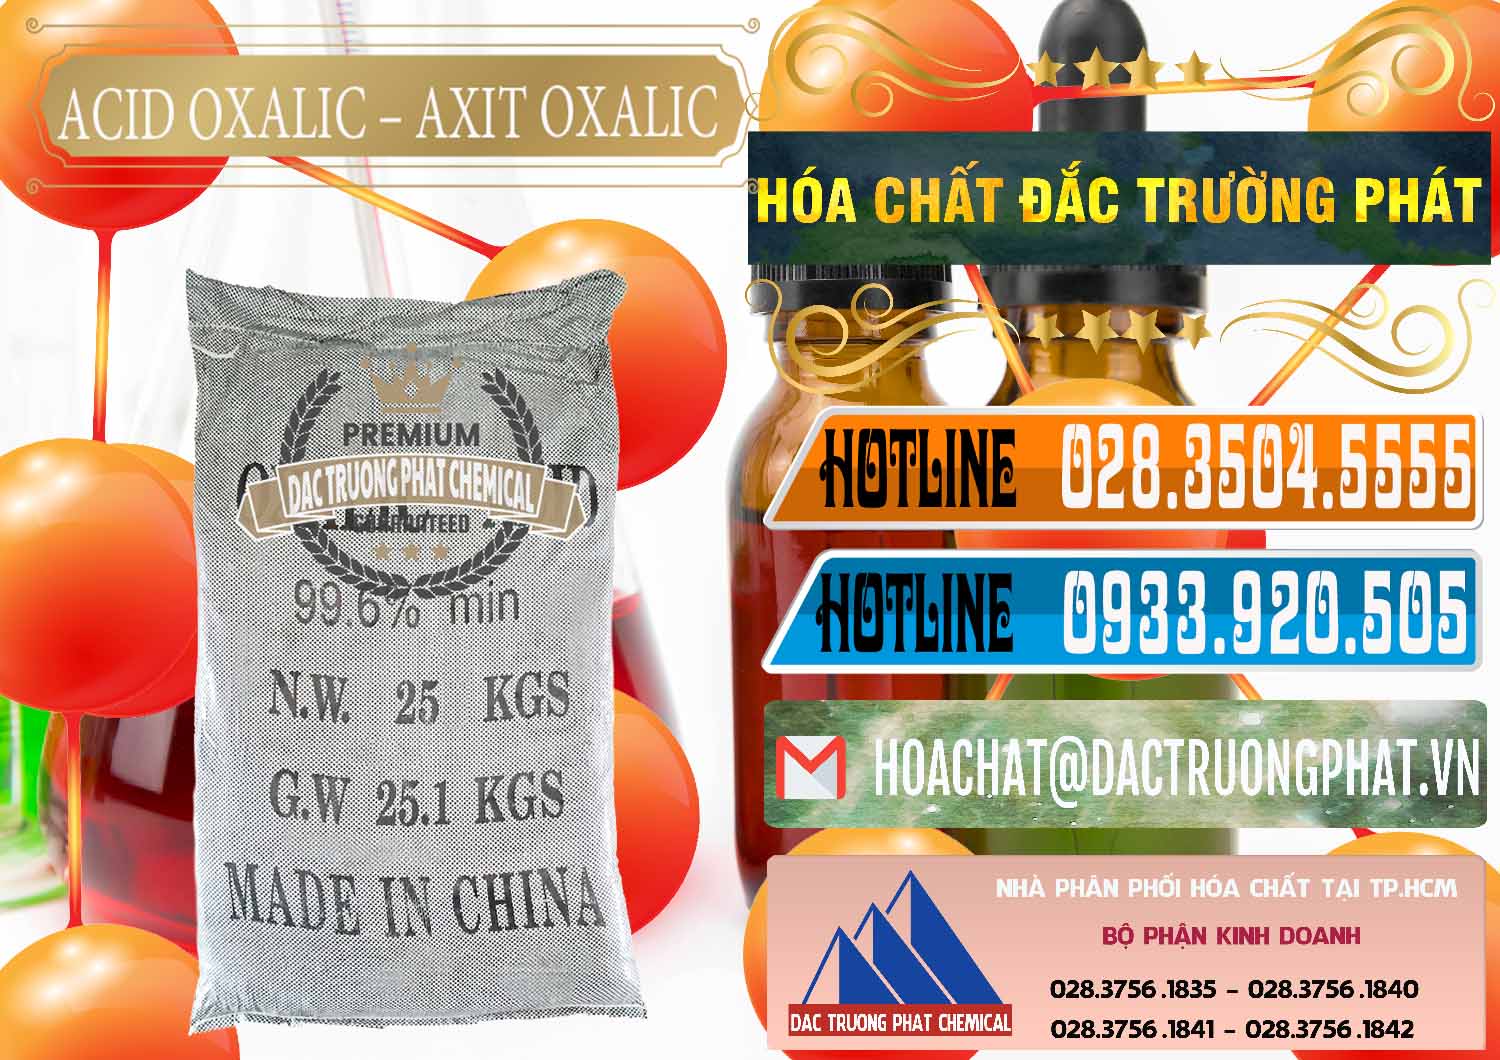 Đơn vị kinh doanh _ bán Acid Oxalic – Axit Oxalic 99.6% Trung Quốc China - 0014 - Nơi chuyên bán & phân phối hóa chất tại TP.HCM - stmp.net